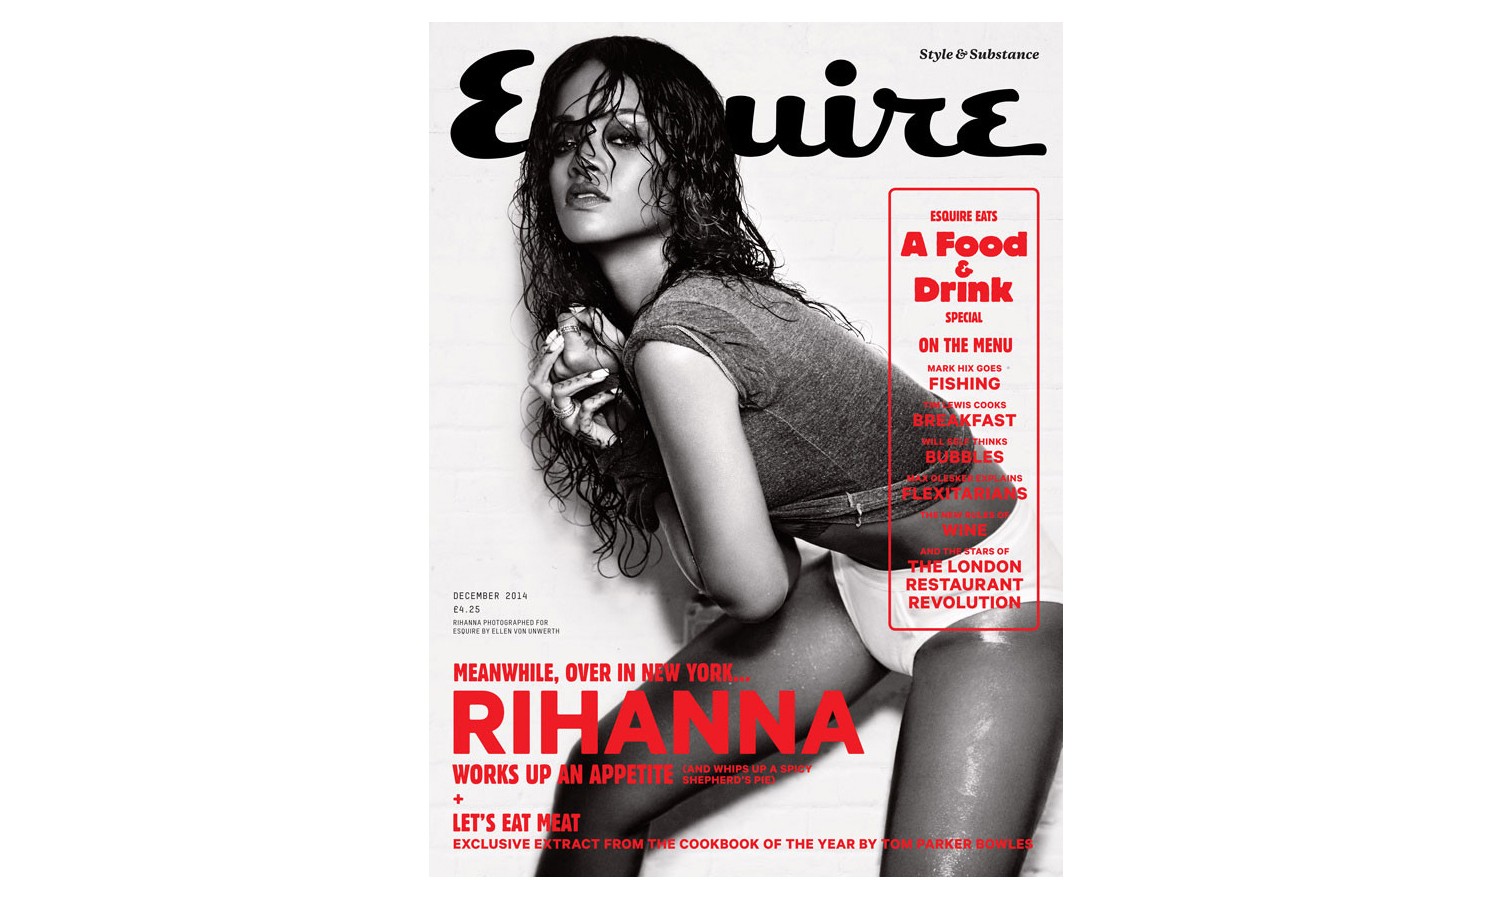 英国版 《 Esquire 》 杂志 12 月刊 Rihanna 拍摄封面及内页图集